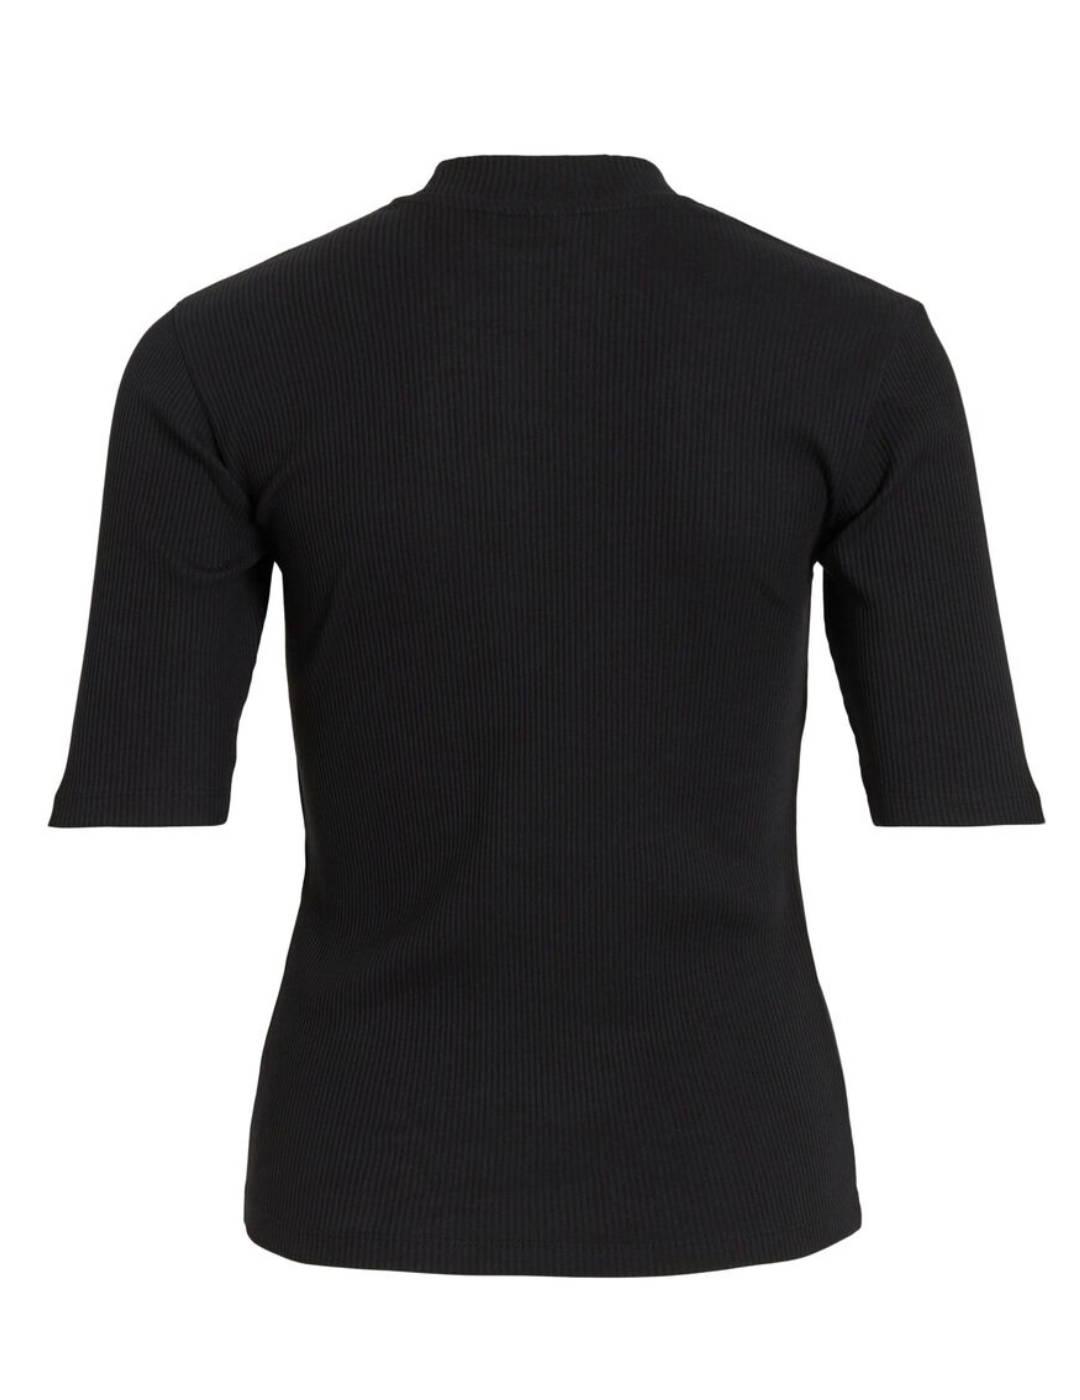 Camiseta Vila Abenia negra de canalé para mujer